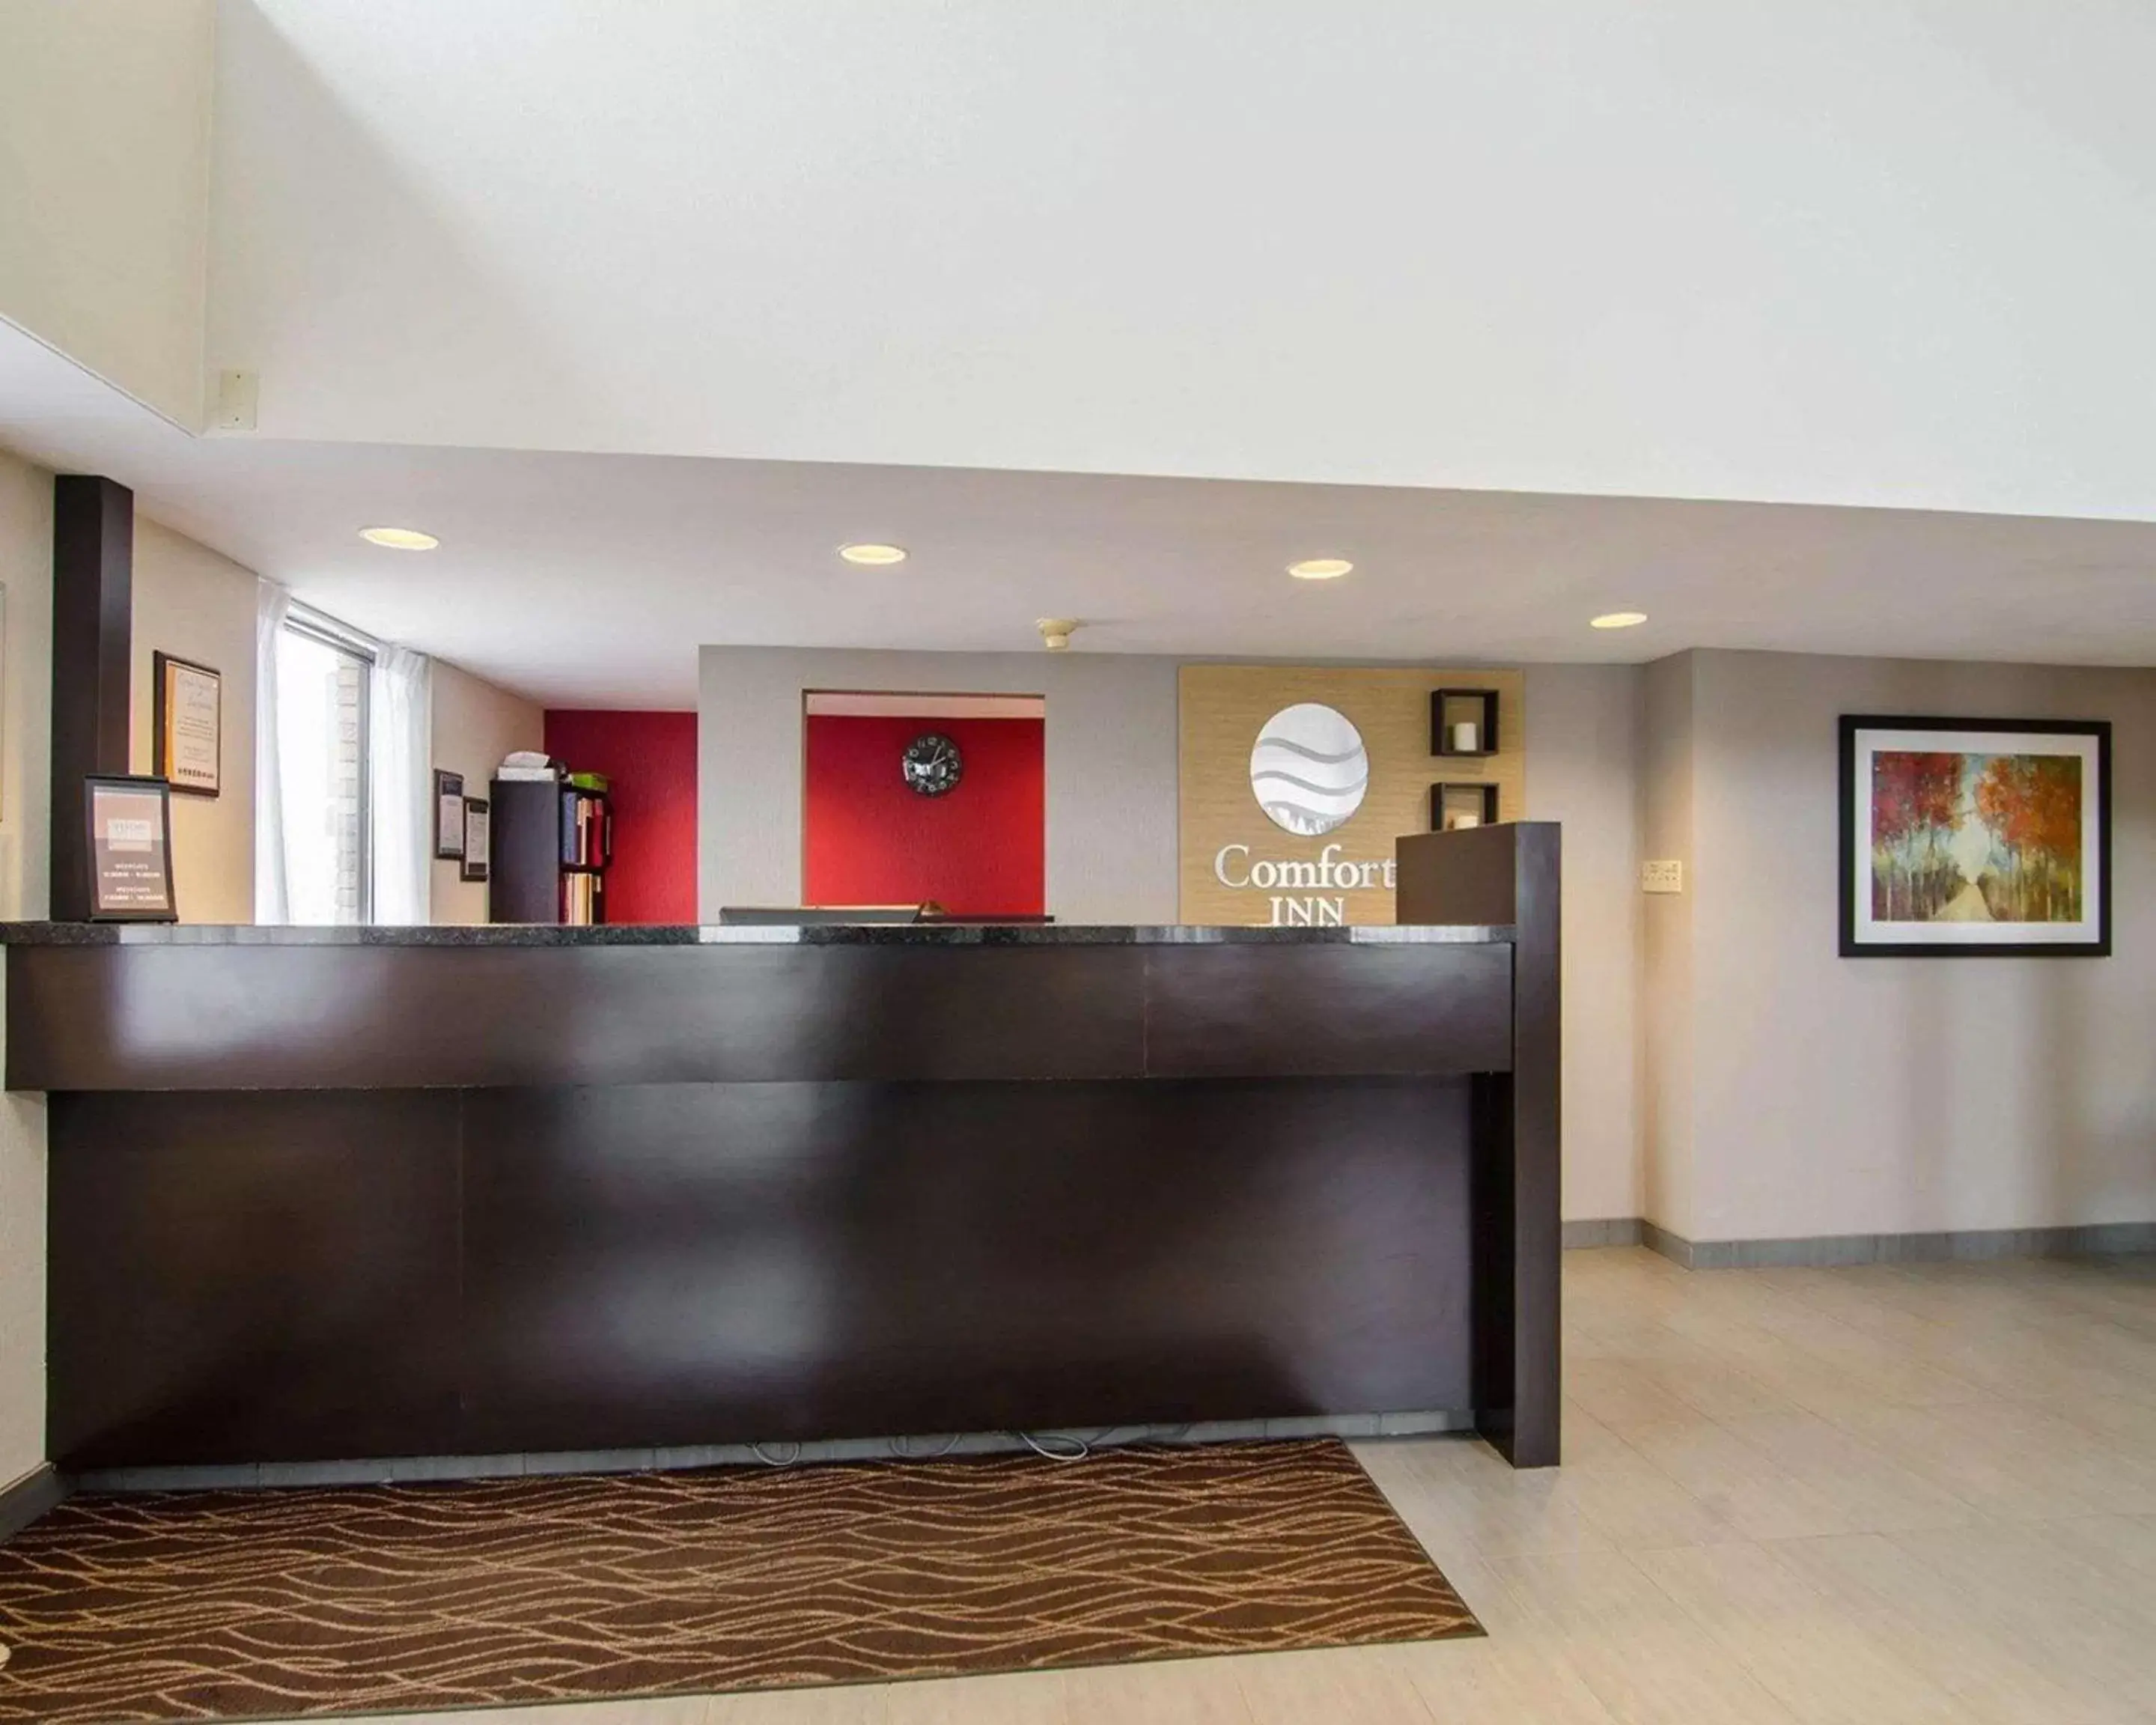 Lobby or reception, Lobby/Reception in Comfort Inn Saskatoon